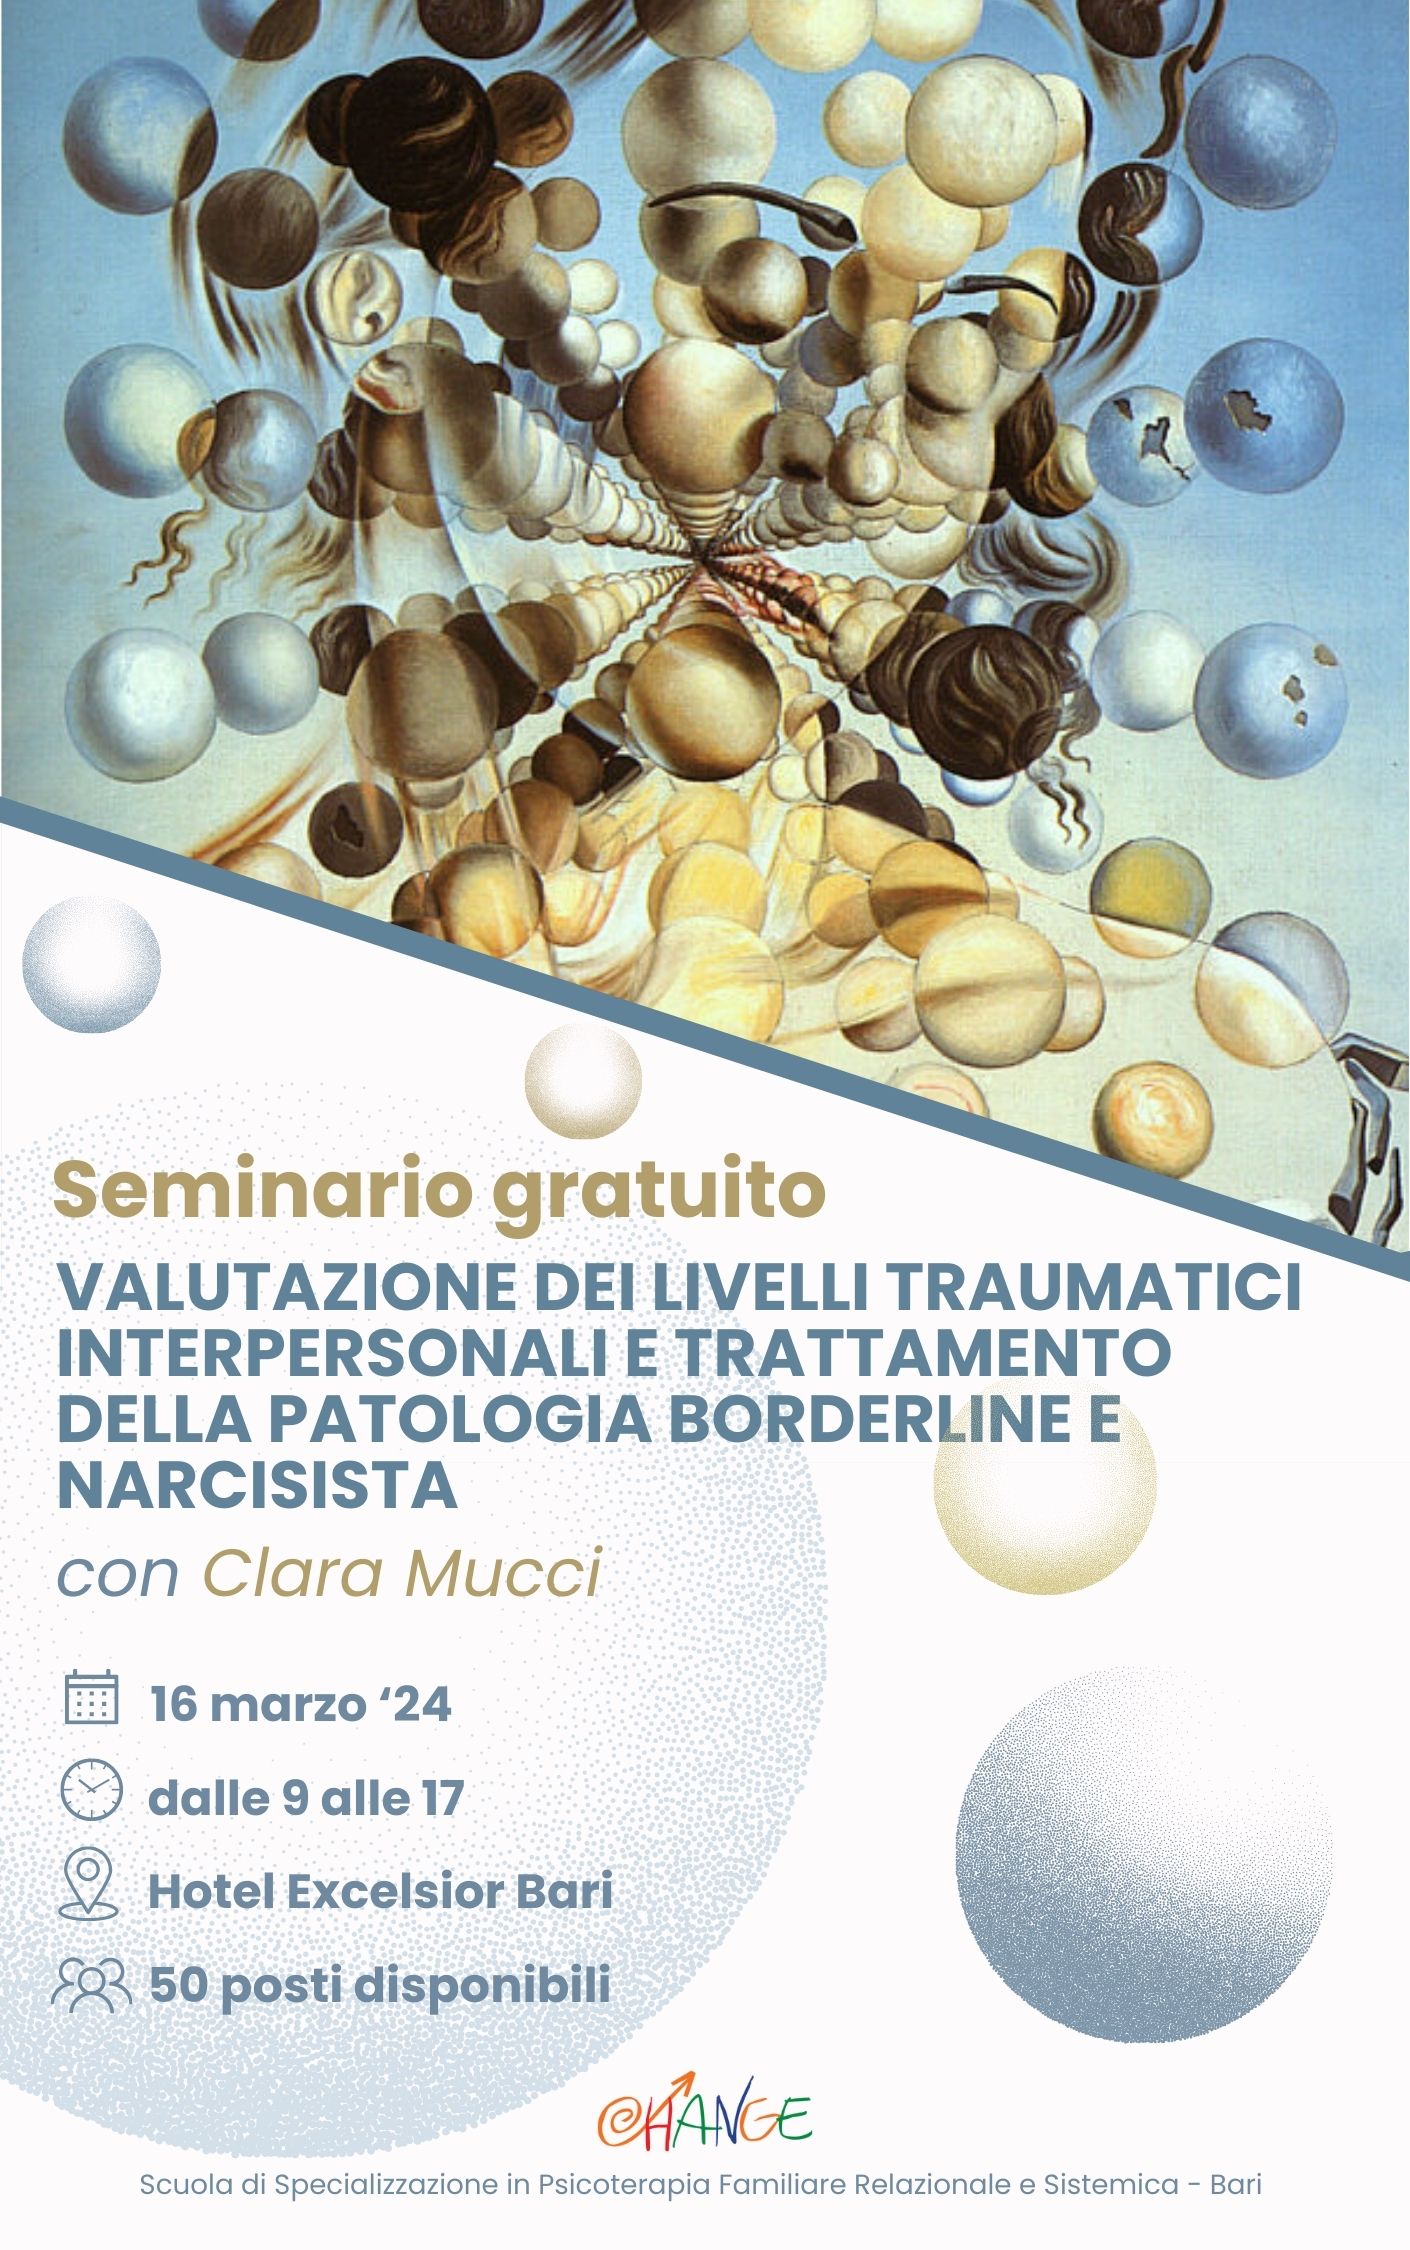 Seminario gratuito &quot;Valutazione dei livelli traumatici interpersonali e trattamento della patologia borderline e narcisista&quot; con Clara Mucci